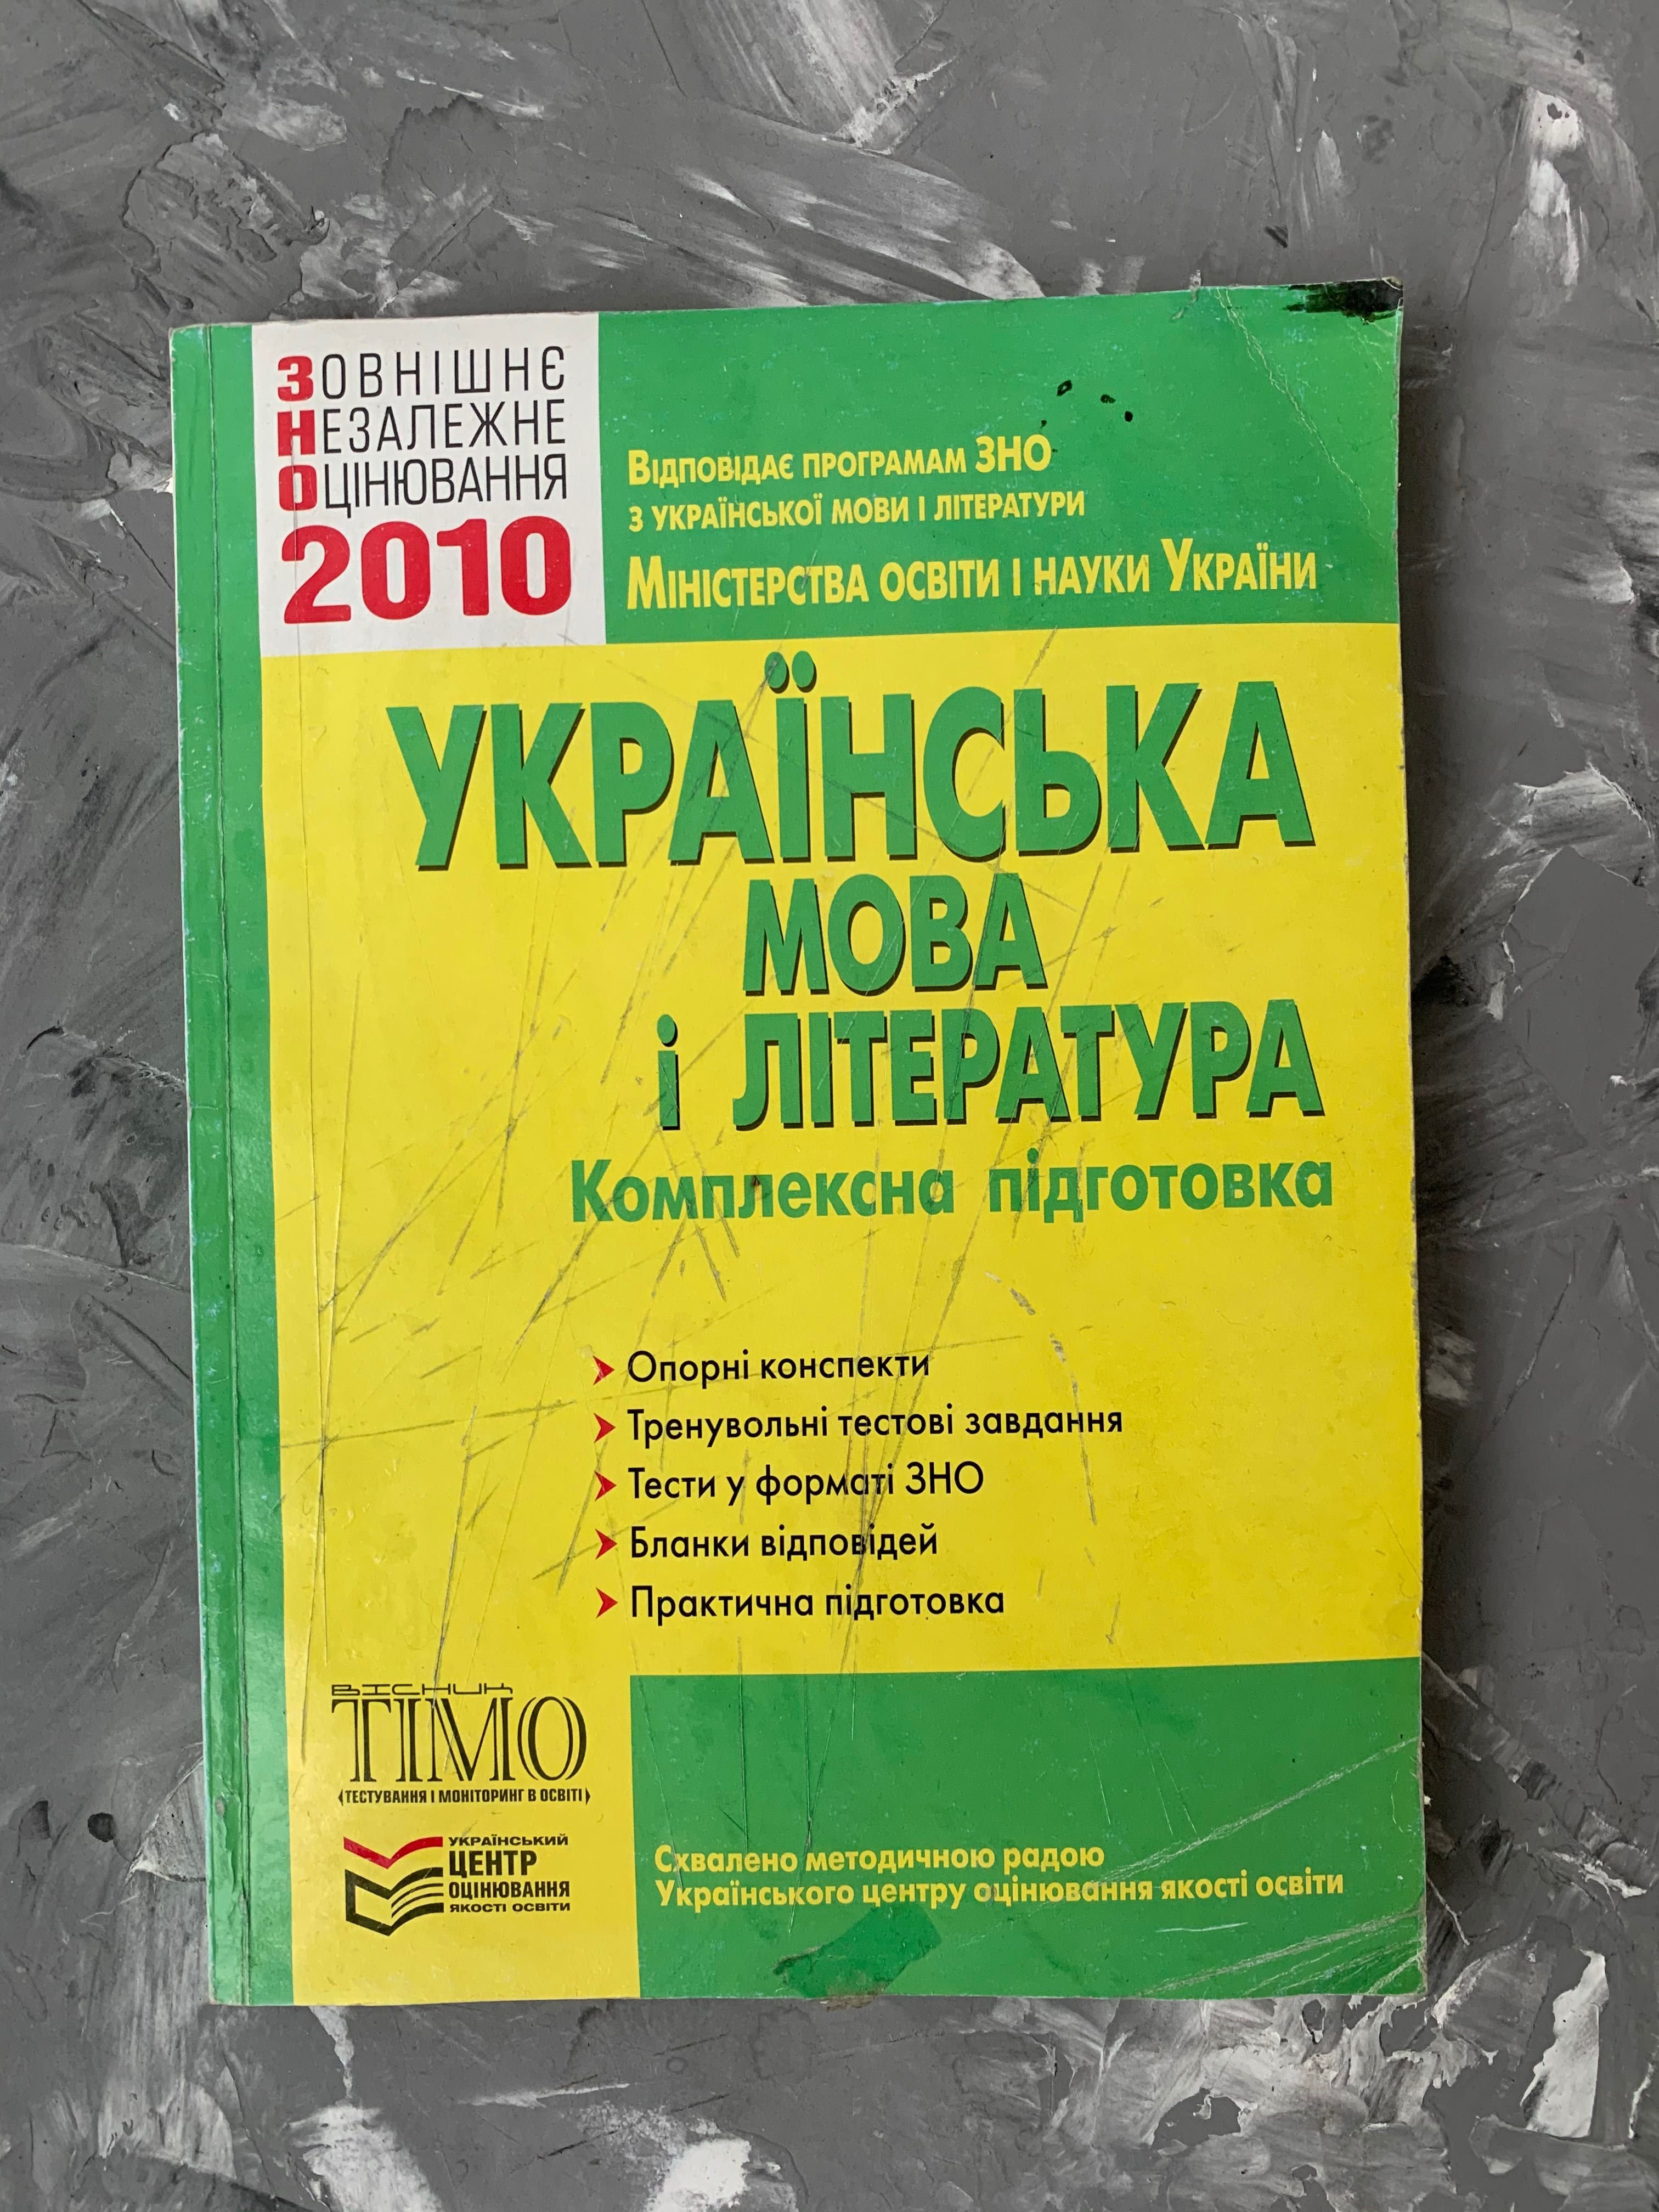 Повний набір Українська мова література зно Дпа конспект тест збірник